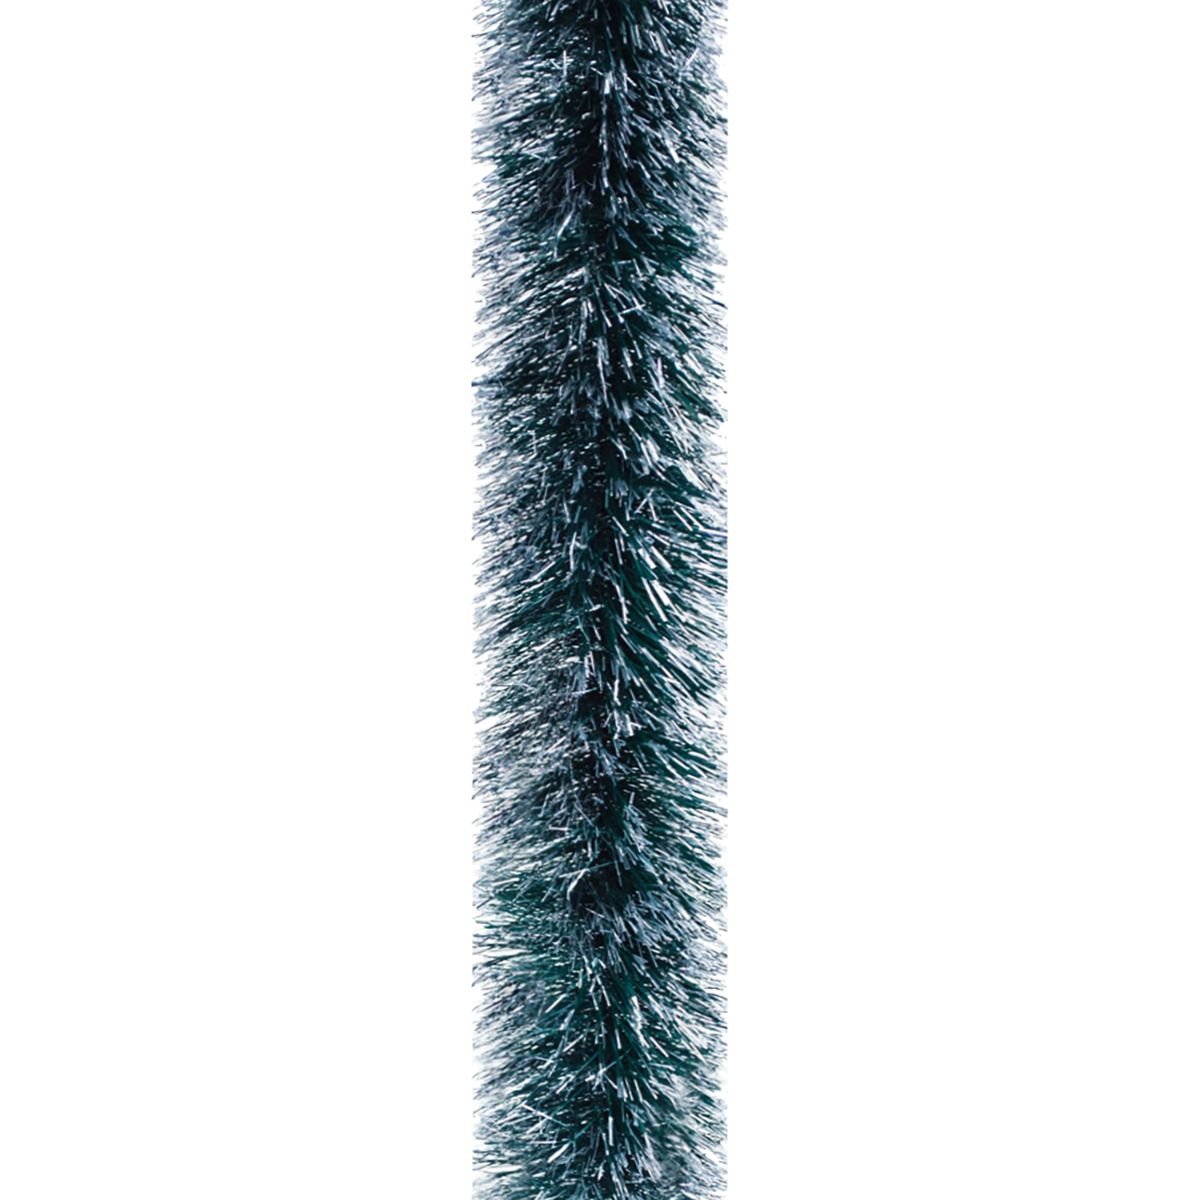 Мішура Novogod'ko 10 см 3 м зелена матова зі срібними кінчиками (980323) - фото 1